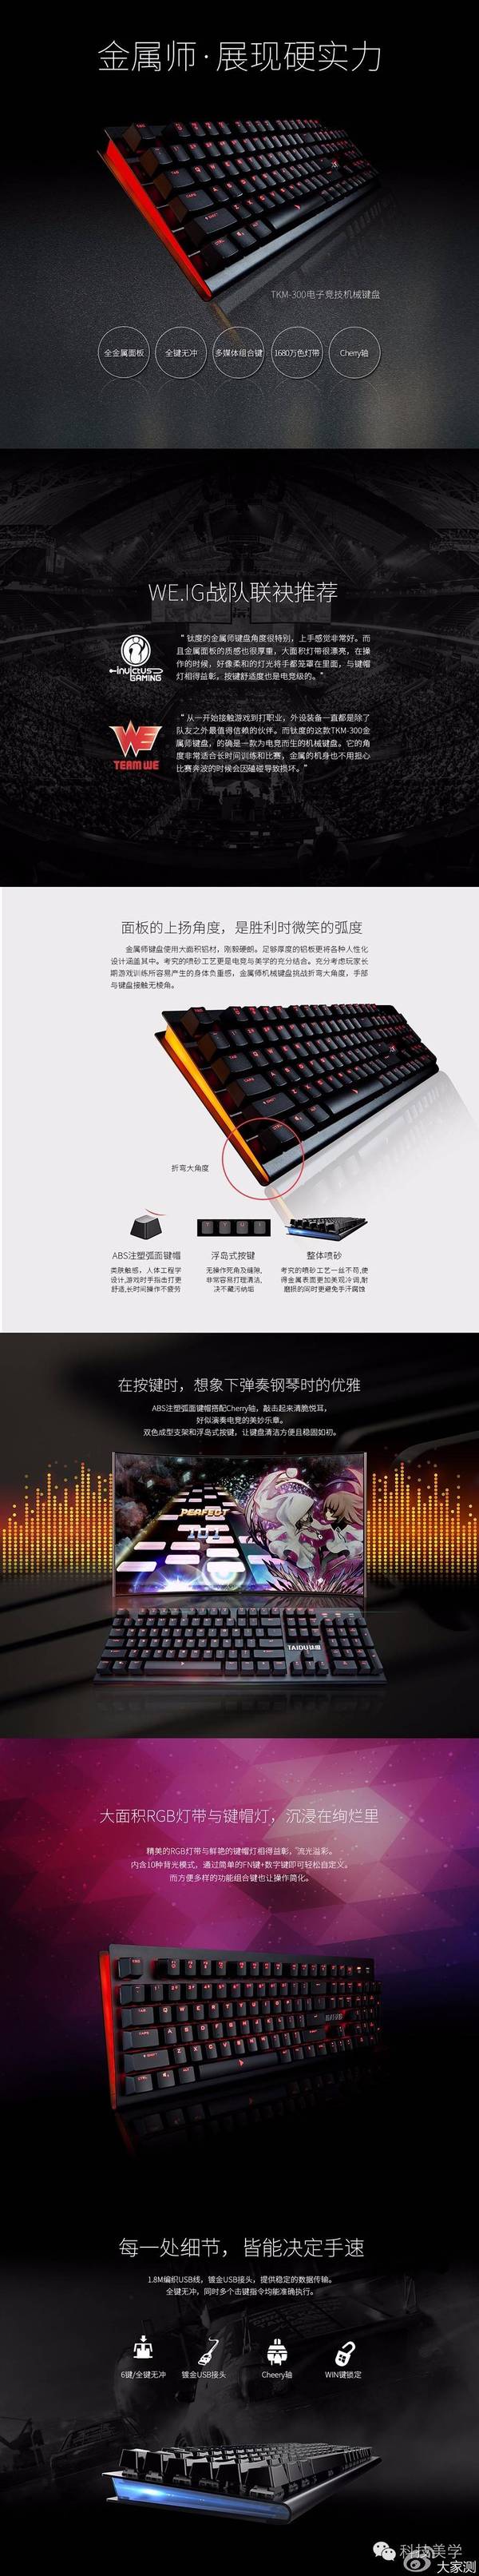 码报:【j2开奖】钛度 金属师智能电竞机械键盘 699元免费申请「大家测」